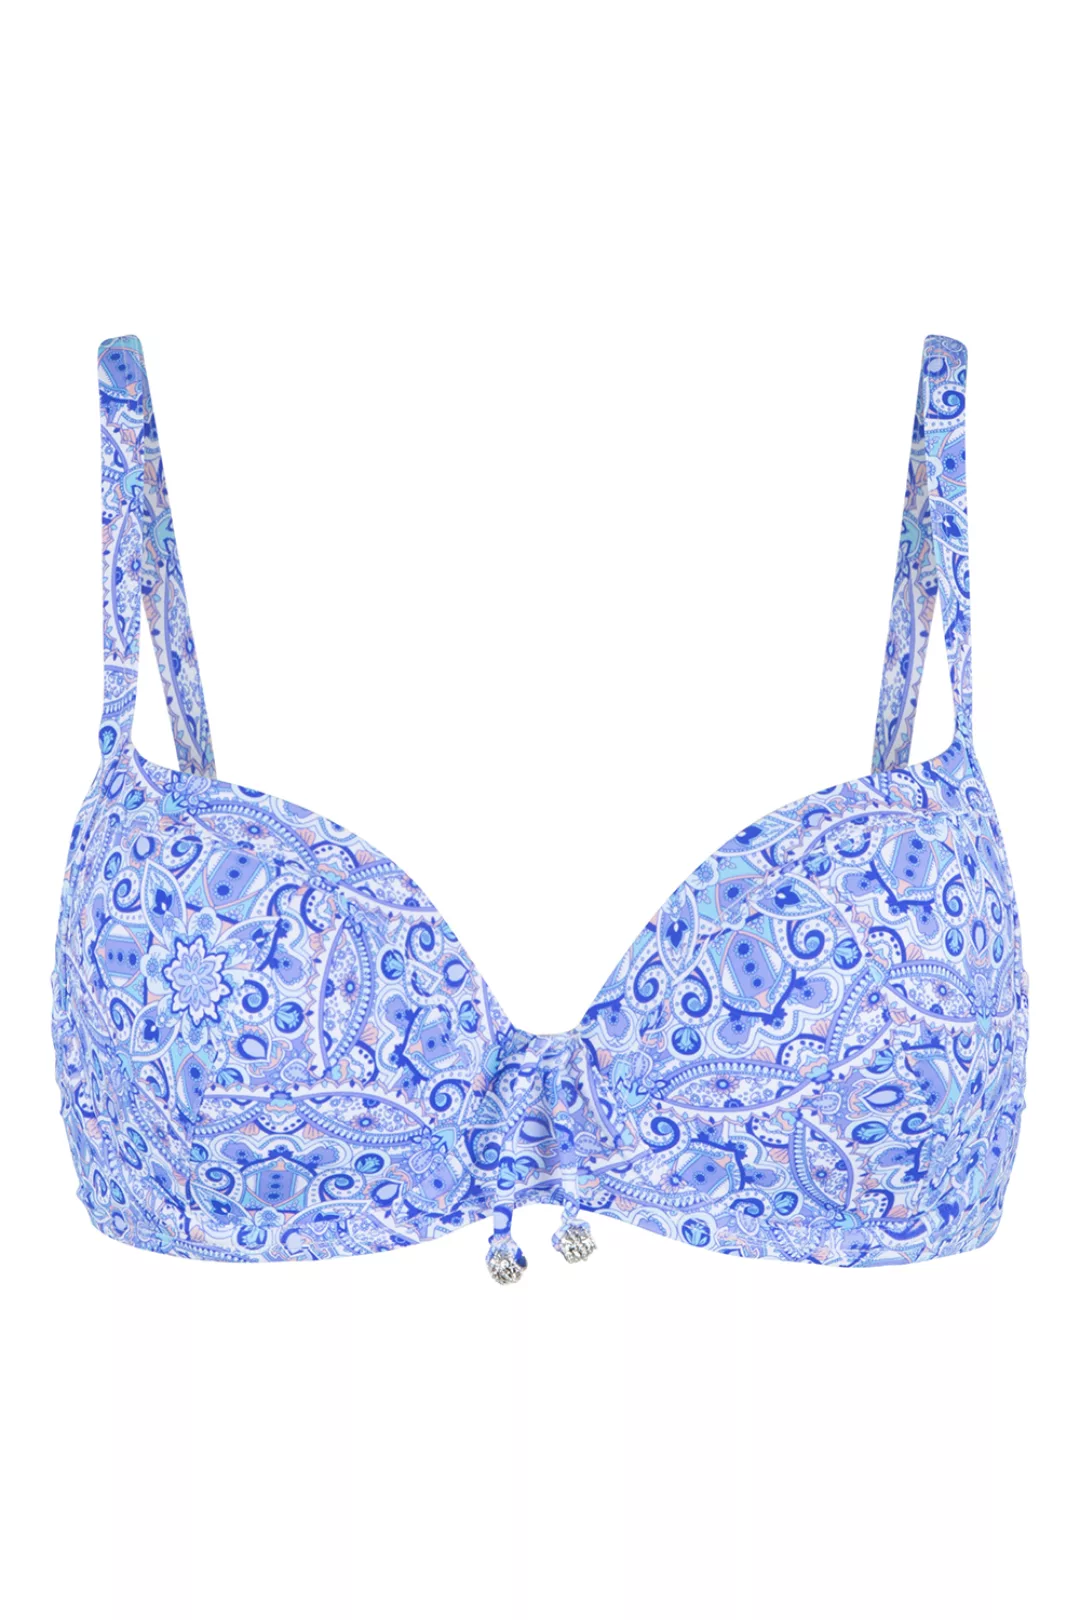 LingaDore Bikini Oberteil geformt Blue Paisley 36C blau günstig online kaufen